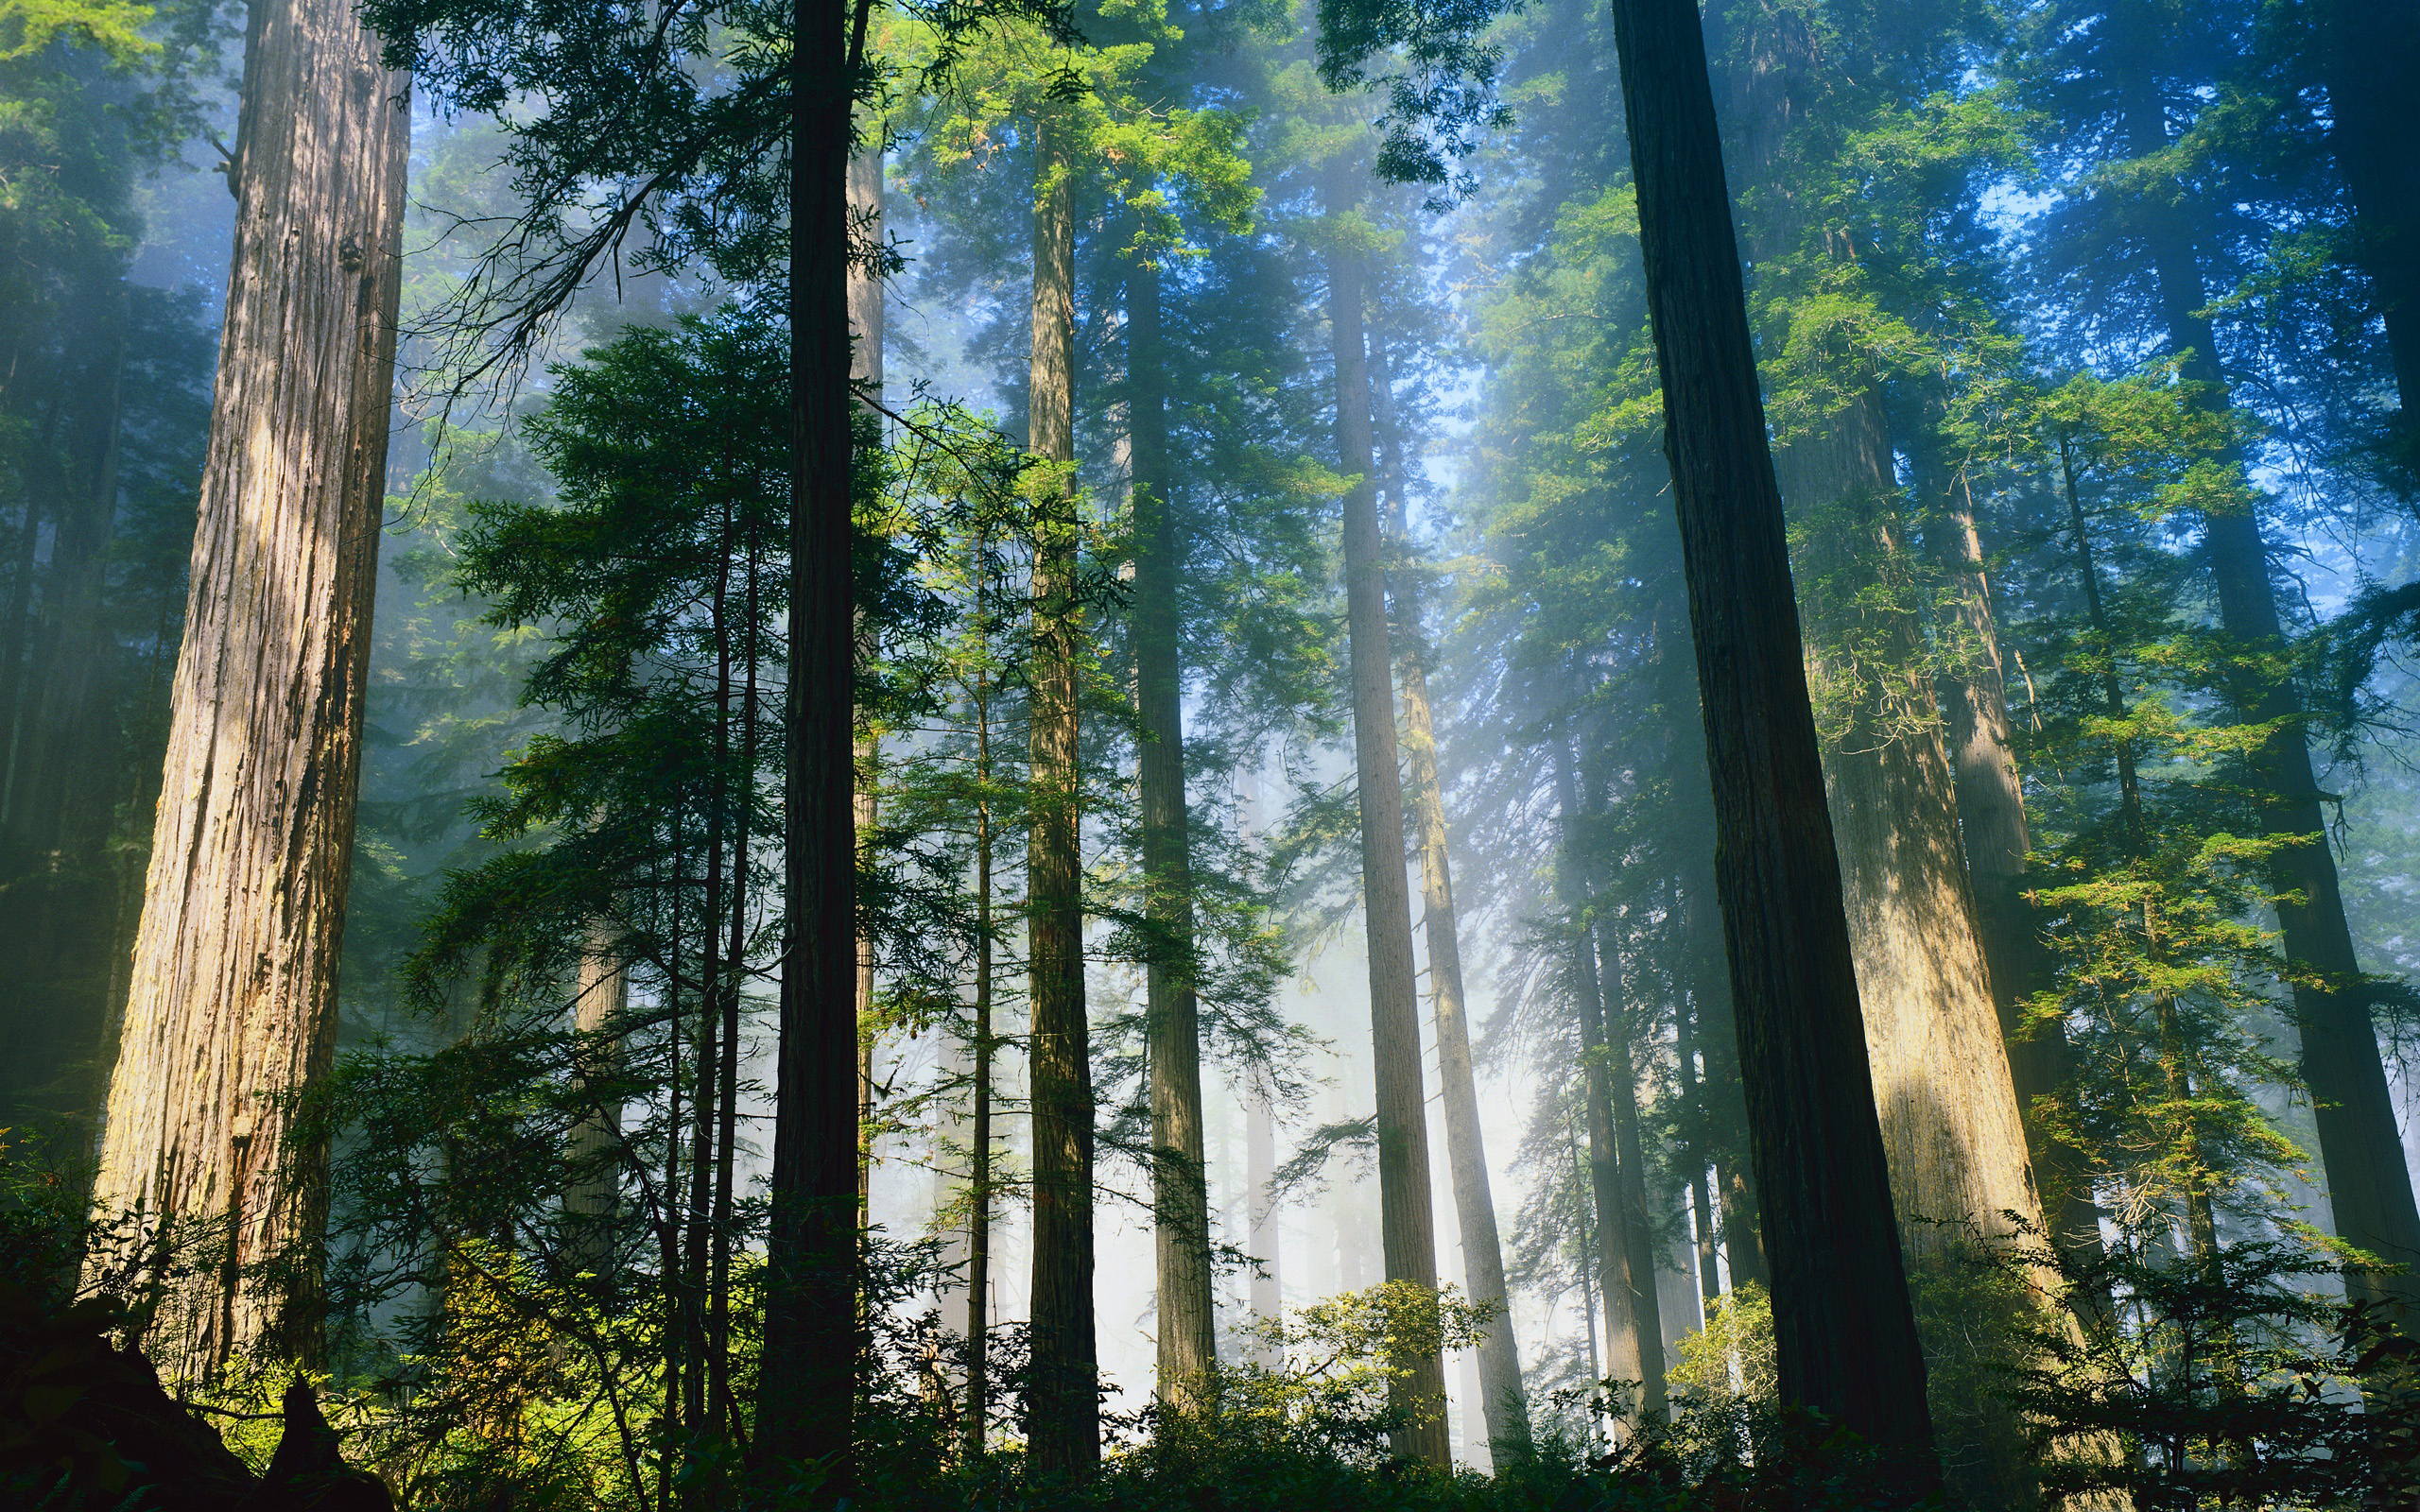 Trao cho mình những khoảnh khắc thư thái và tĩnh lặng với hình nền rừng cây Sequoia đỏ. Hình ảnh tái hiện một bầu không khí trong lành, tràn đầy niềm vui, tạo cảm giác giống như bạn đang tập trung thiền. Đón nhận và thưởng thức hình ảnh đẹp này.